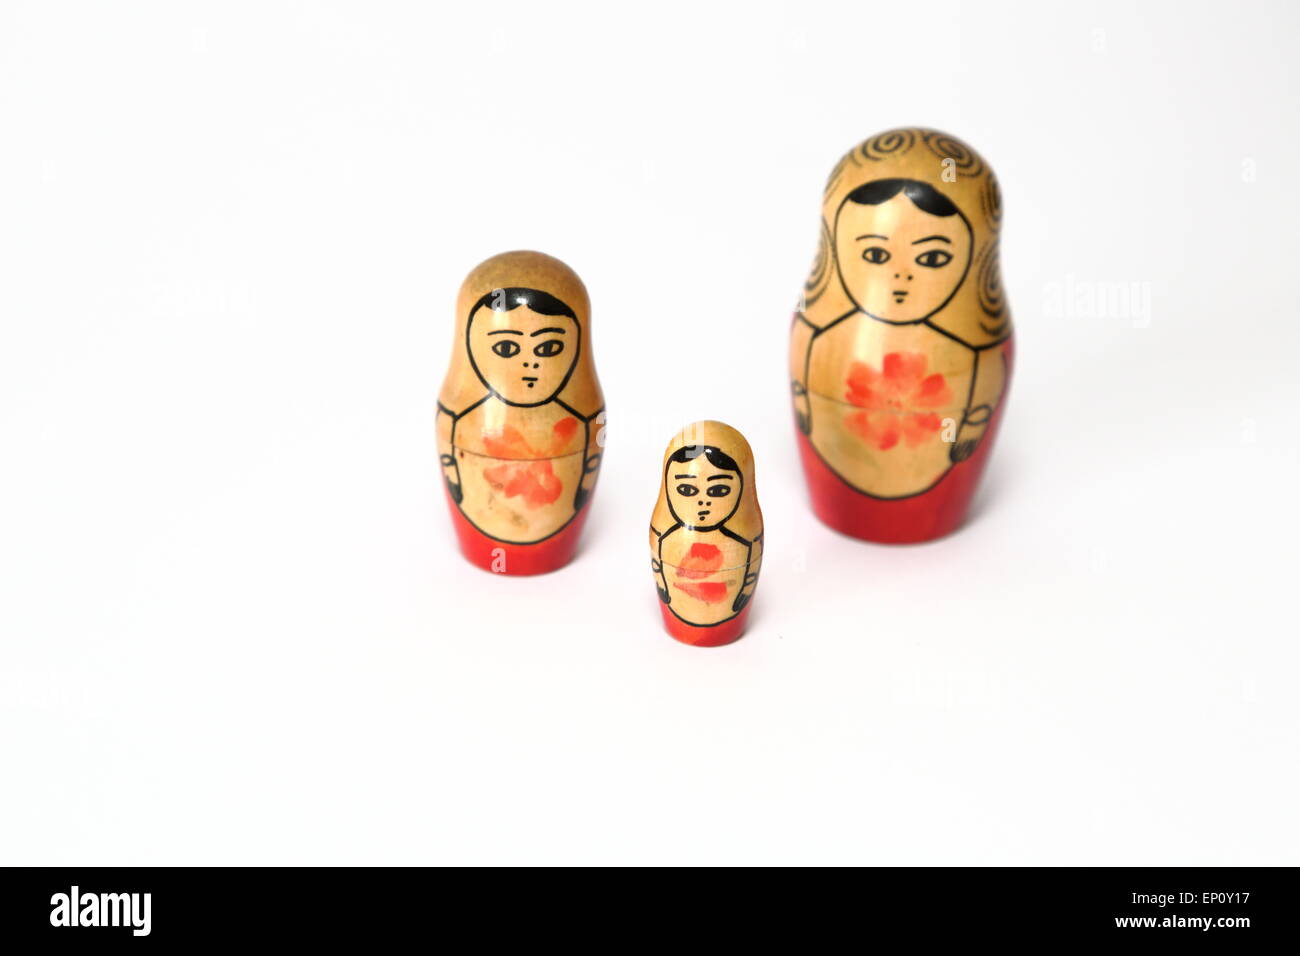 Russische Puppe, bezieht sich auf eine Reihe von Holzpuppen abnehmender Größe ineinander gelegt. Stockfoto